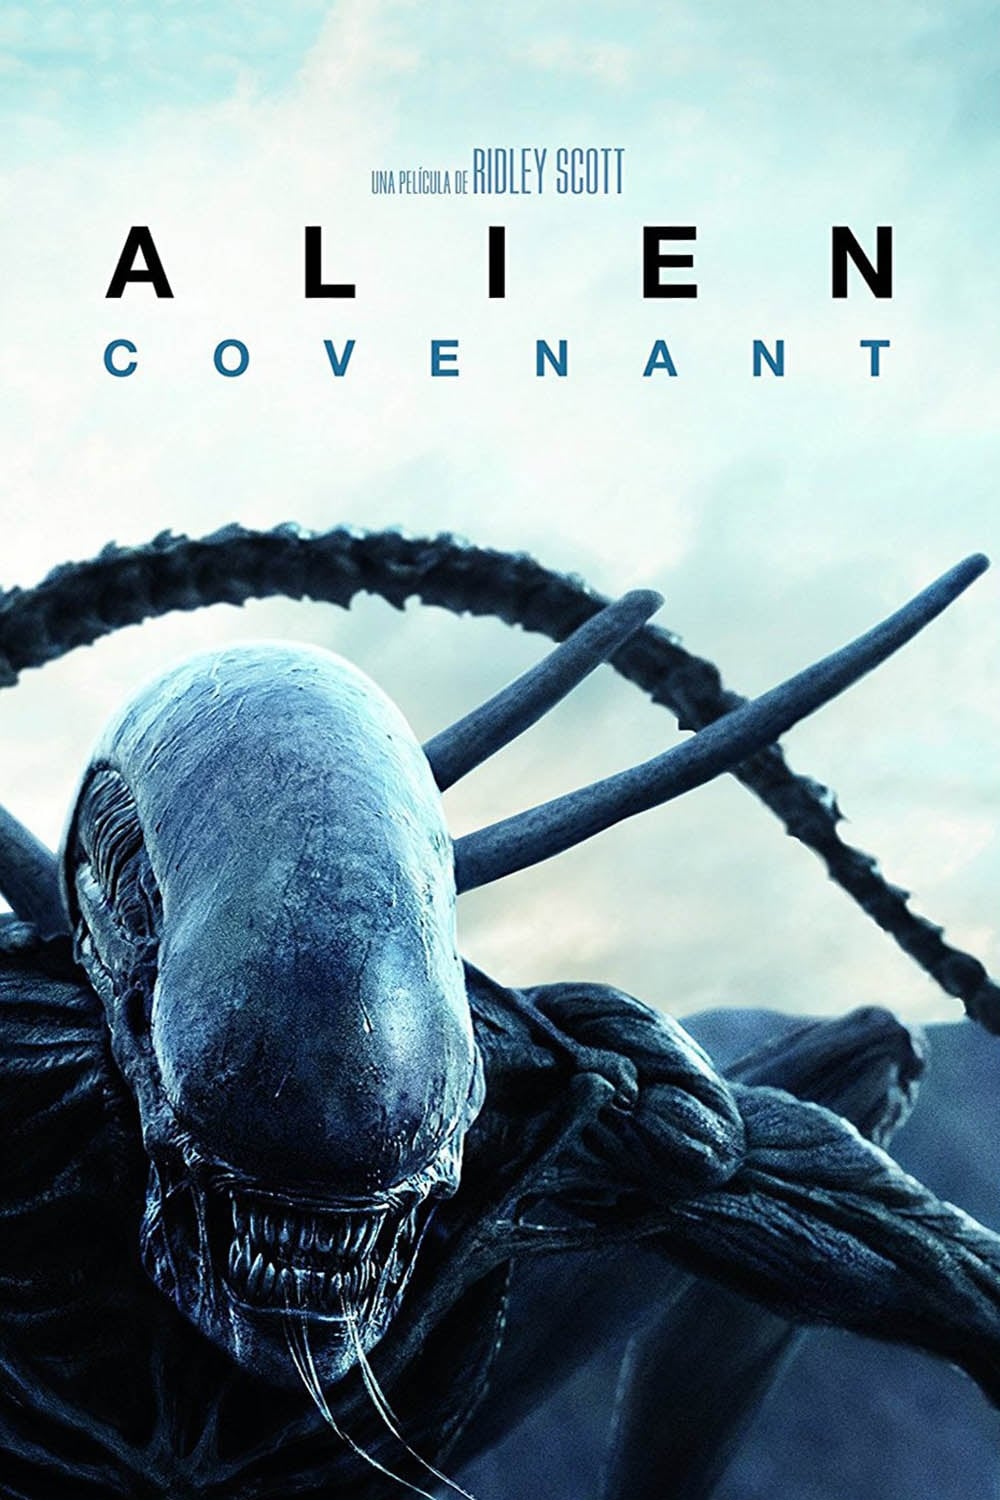 Alien: Covenant poster